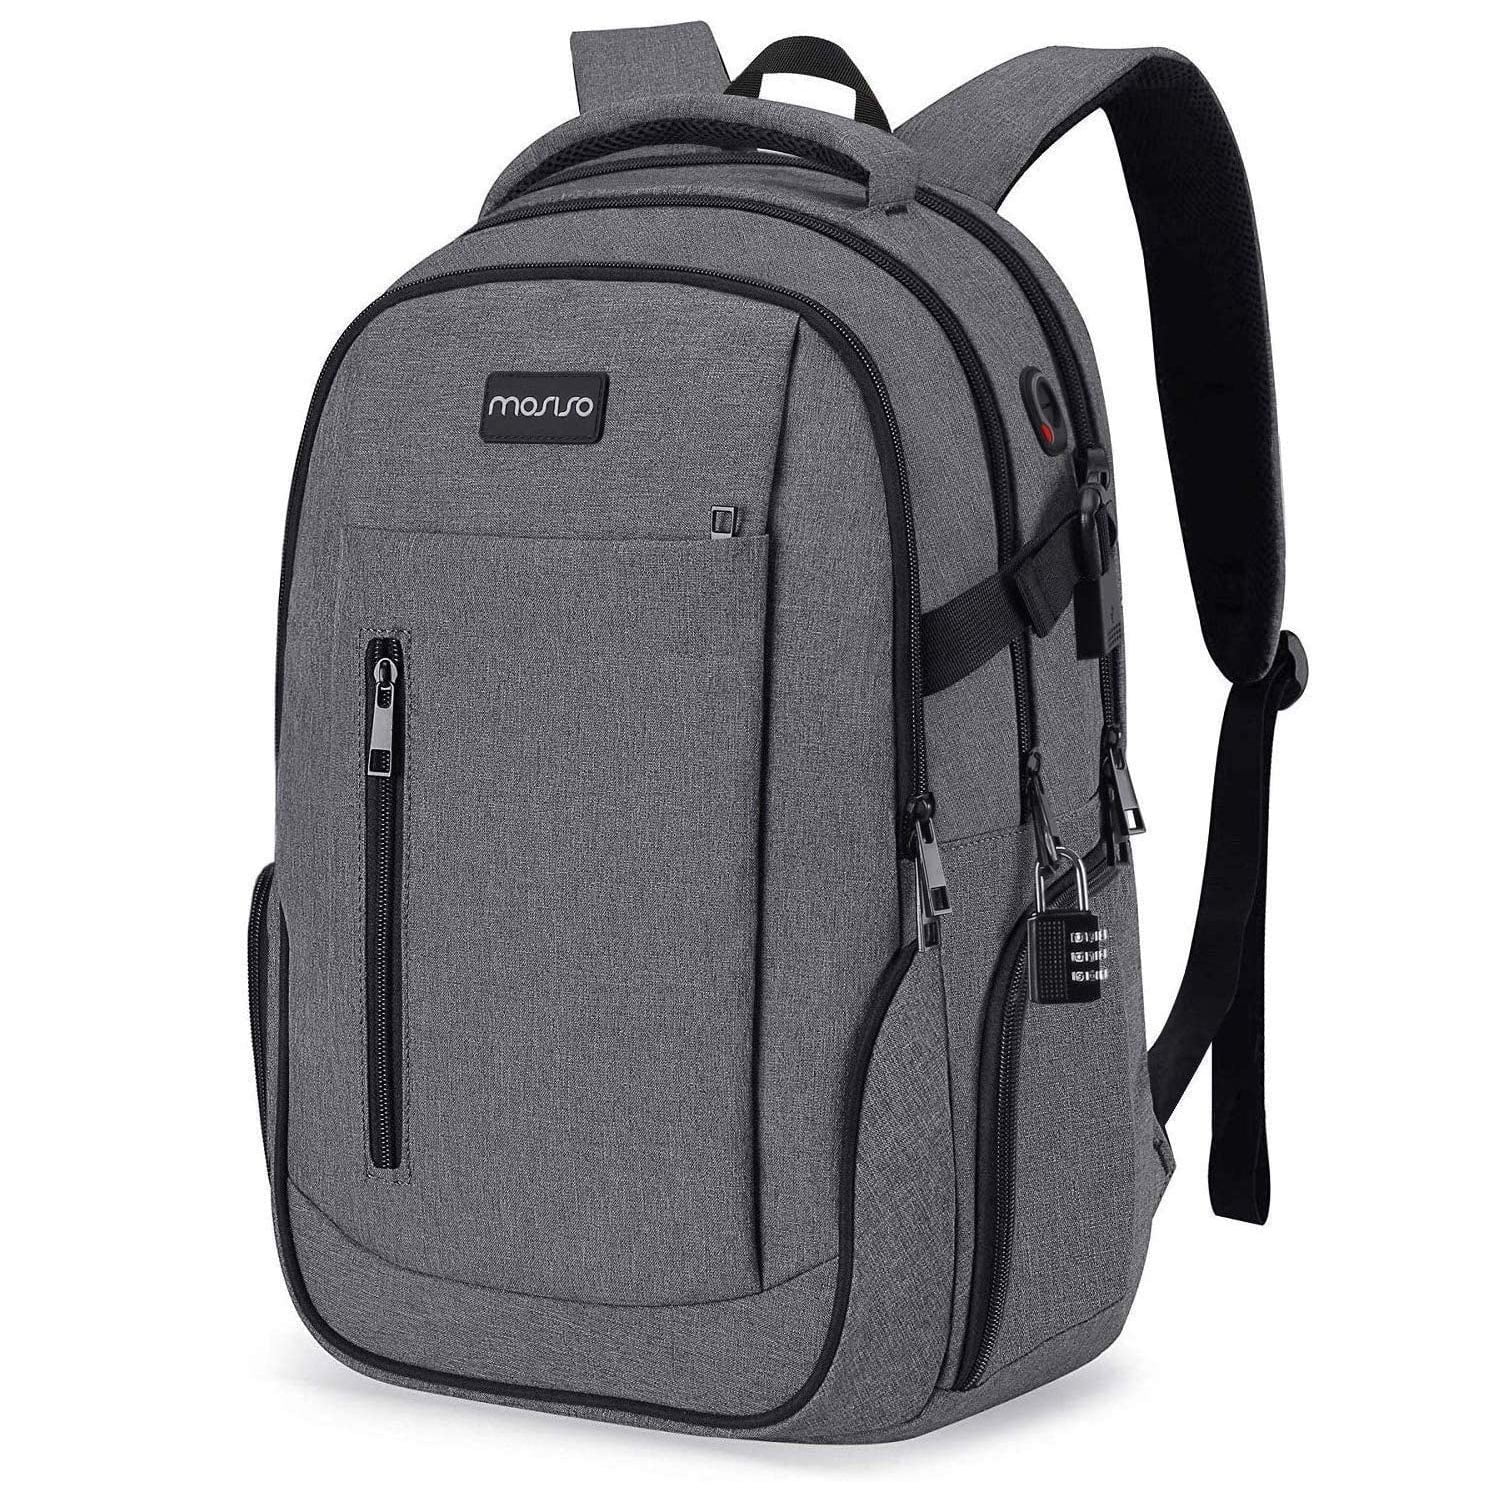 Black Amzbag Laptop Tote Bag 15.6 Inch Shoulder Bag Casual Women Tote Bag Top-Handle Bag